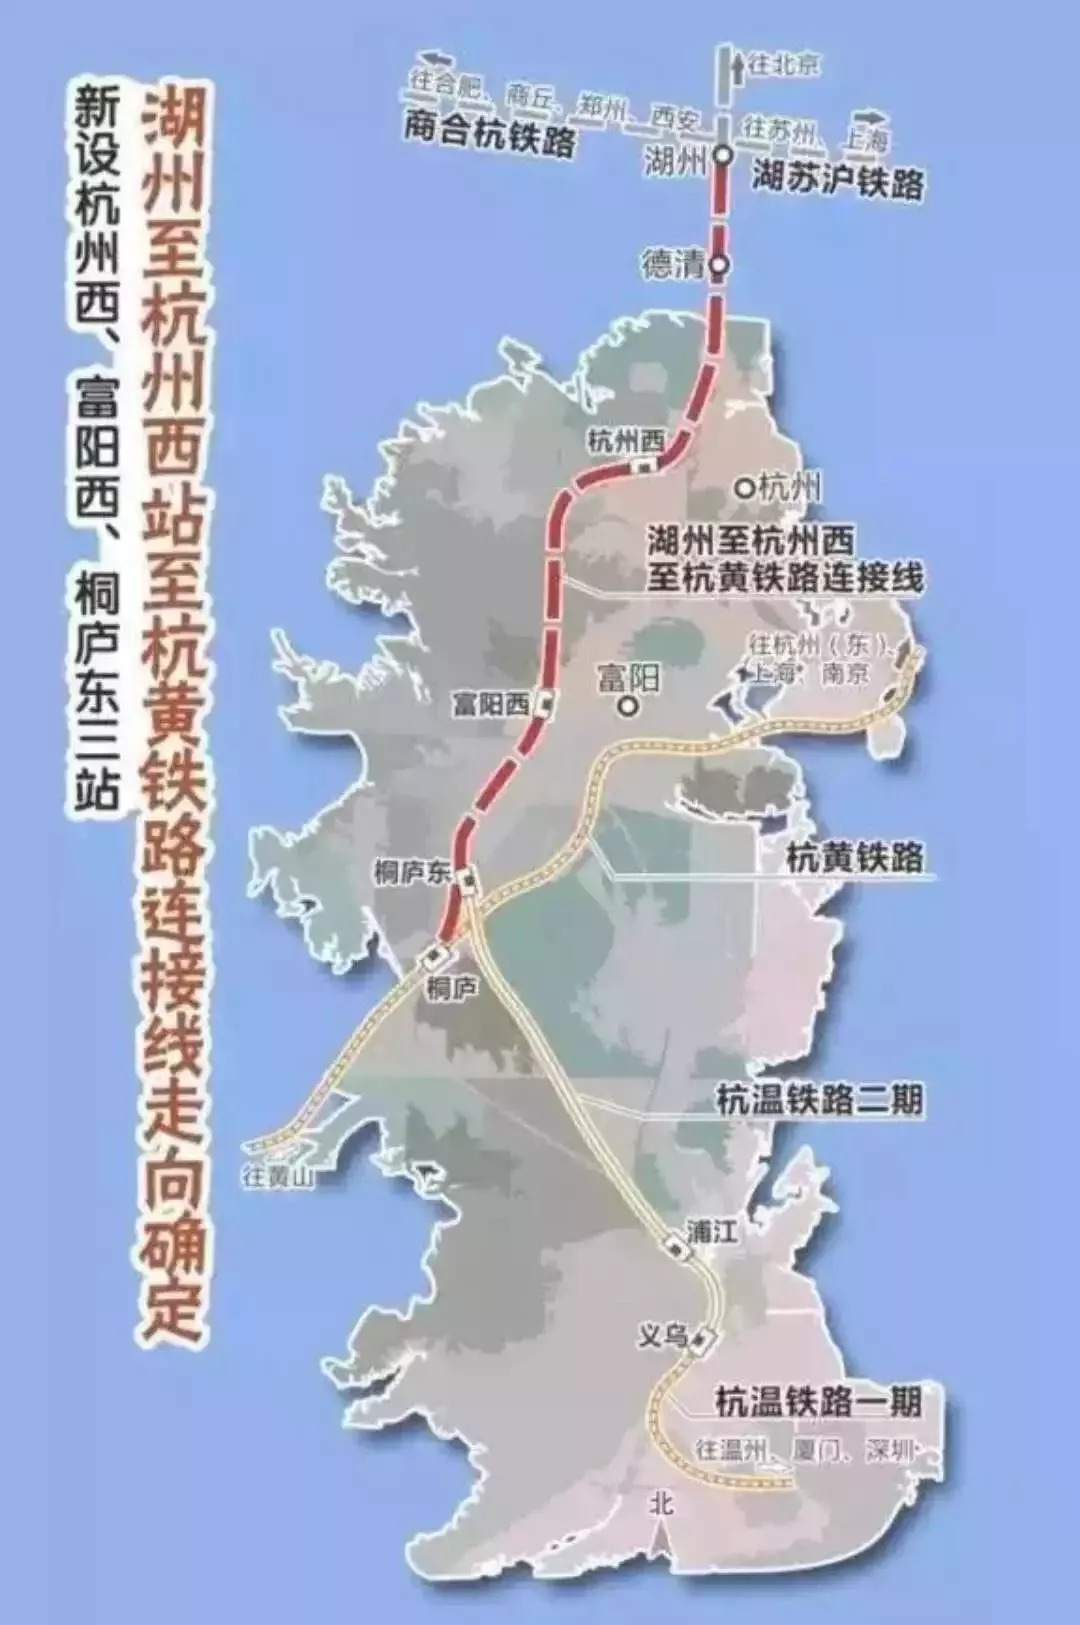 (图中编号为31400001为富阳第一辆公共自行车) 高铁 图为杭富城际